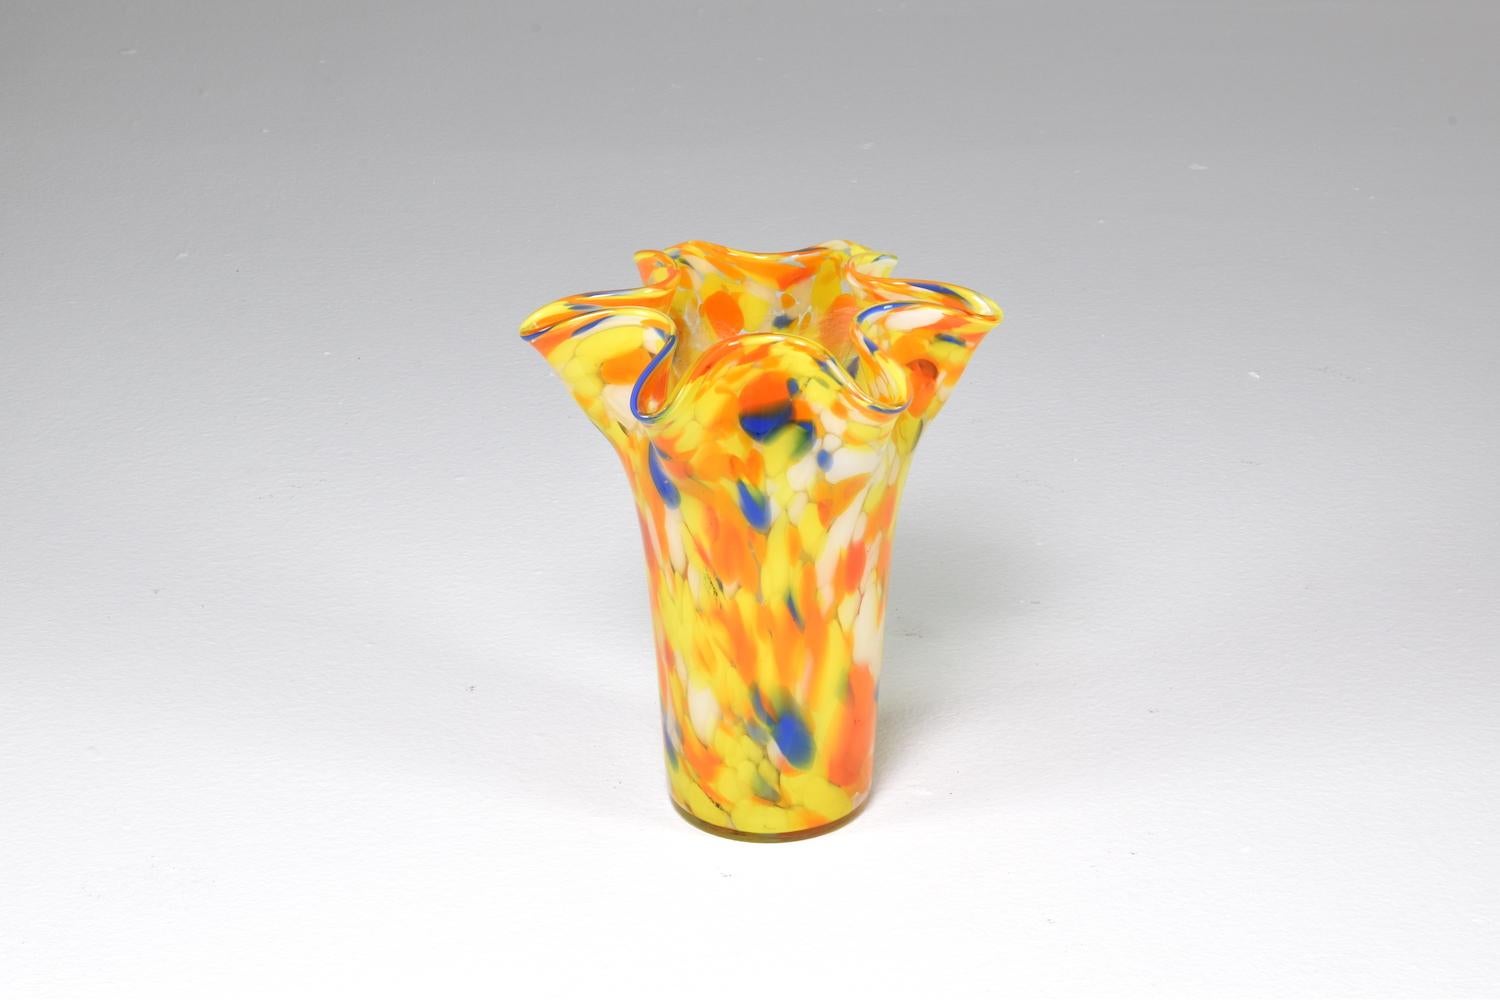 Vase aus mundgeblasenem italienischem Glas aus den 1970er Jahren mit farbenfrohen Flecken aus Murano-Glas in Orange-, Gelb-, Weiß- und Blautönen, die gekonnt miteinander vermischt wurden. 
Dieses fröhliche Dekorationsstück ist in Form einer